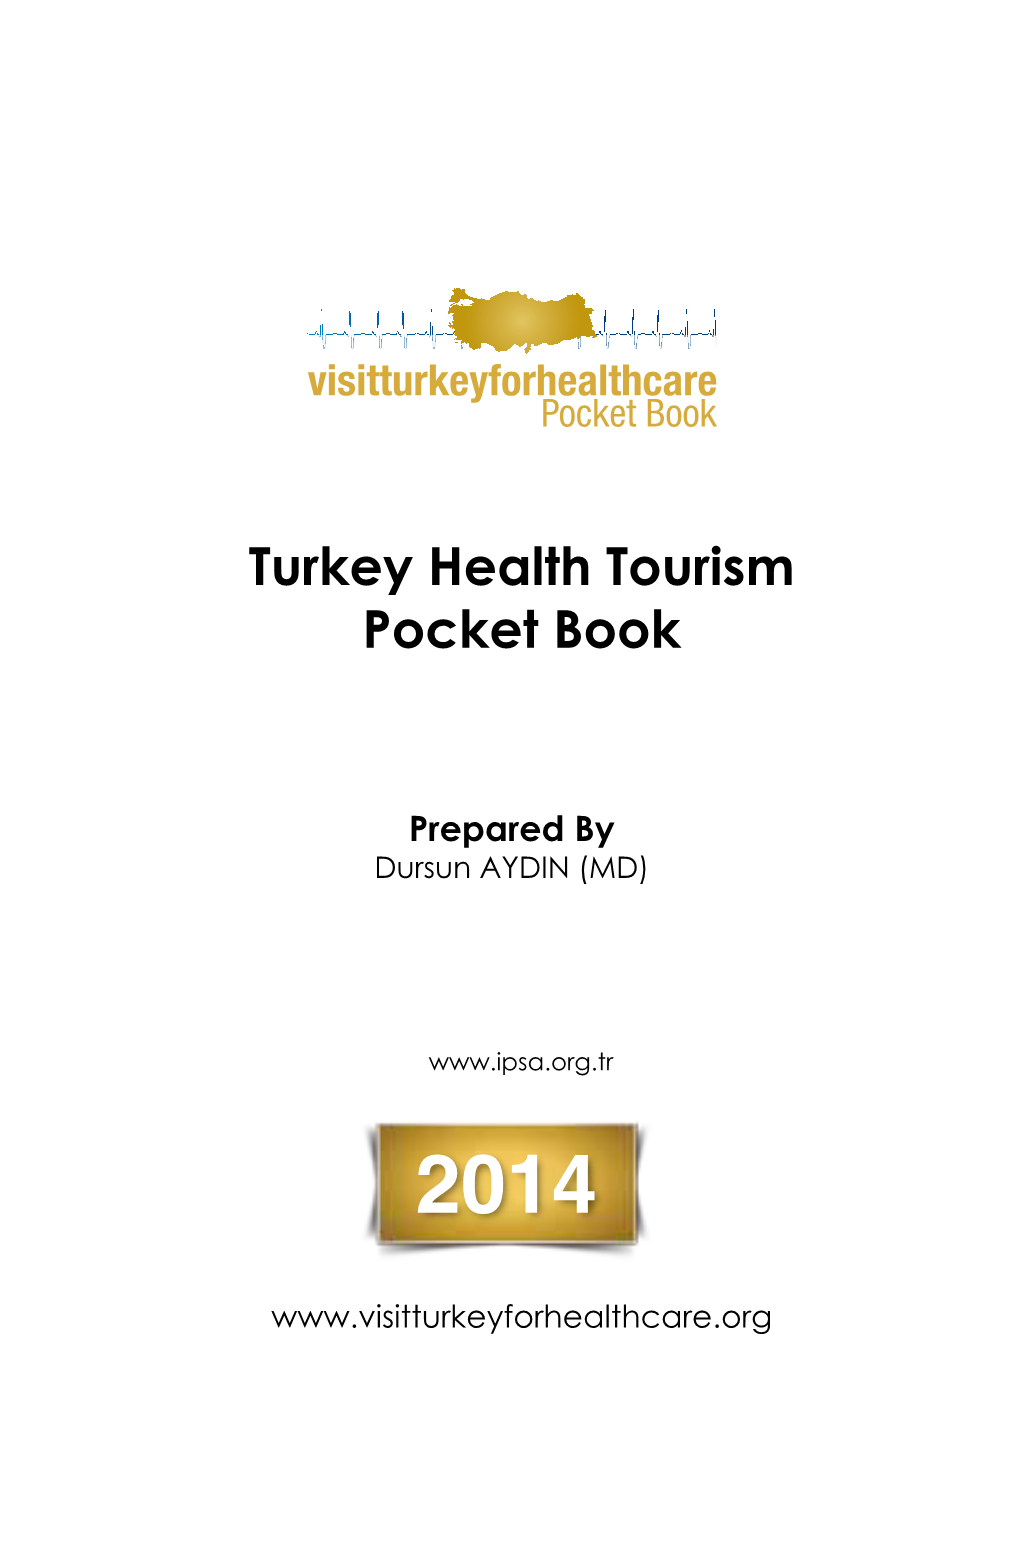 Turkey Health Tourism Pocket Book